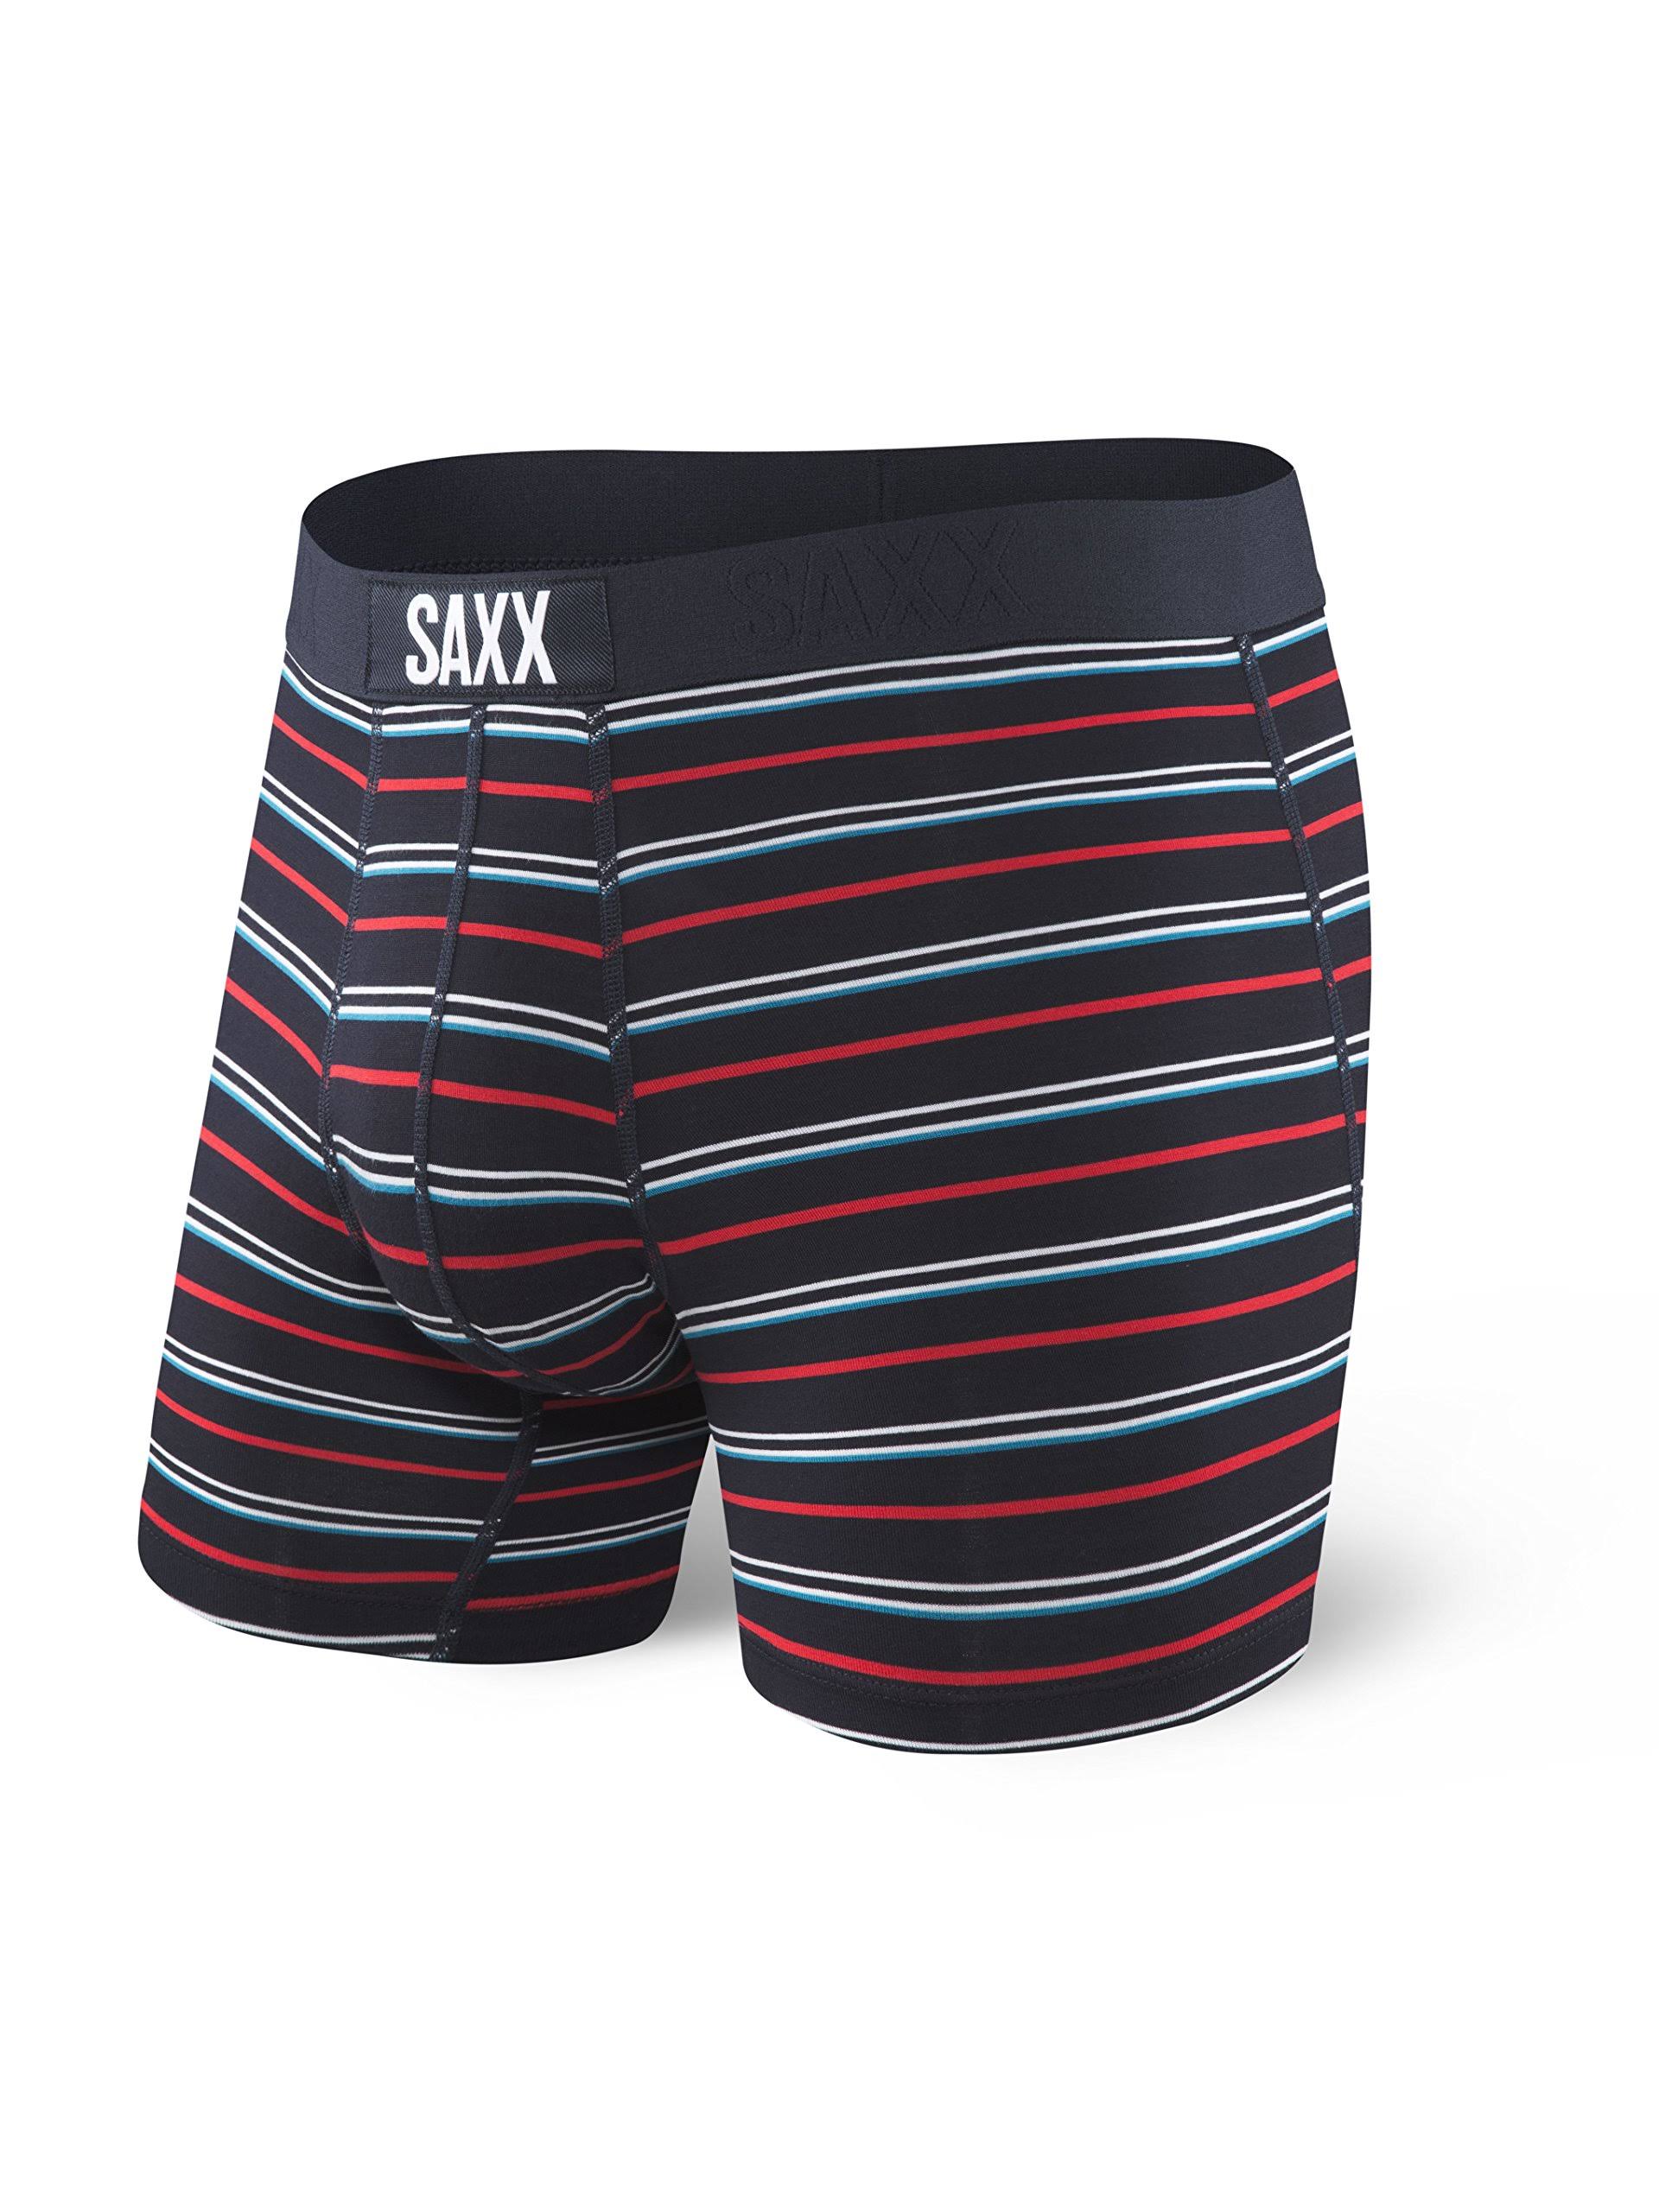 Saxx Vibe Boxer Brief - Ink Coast Stripe